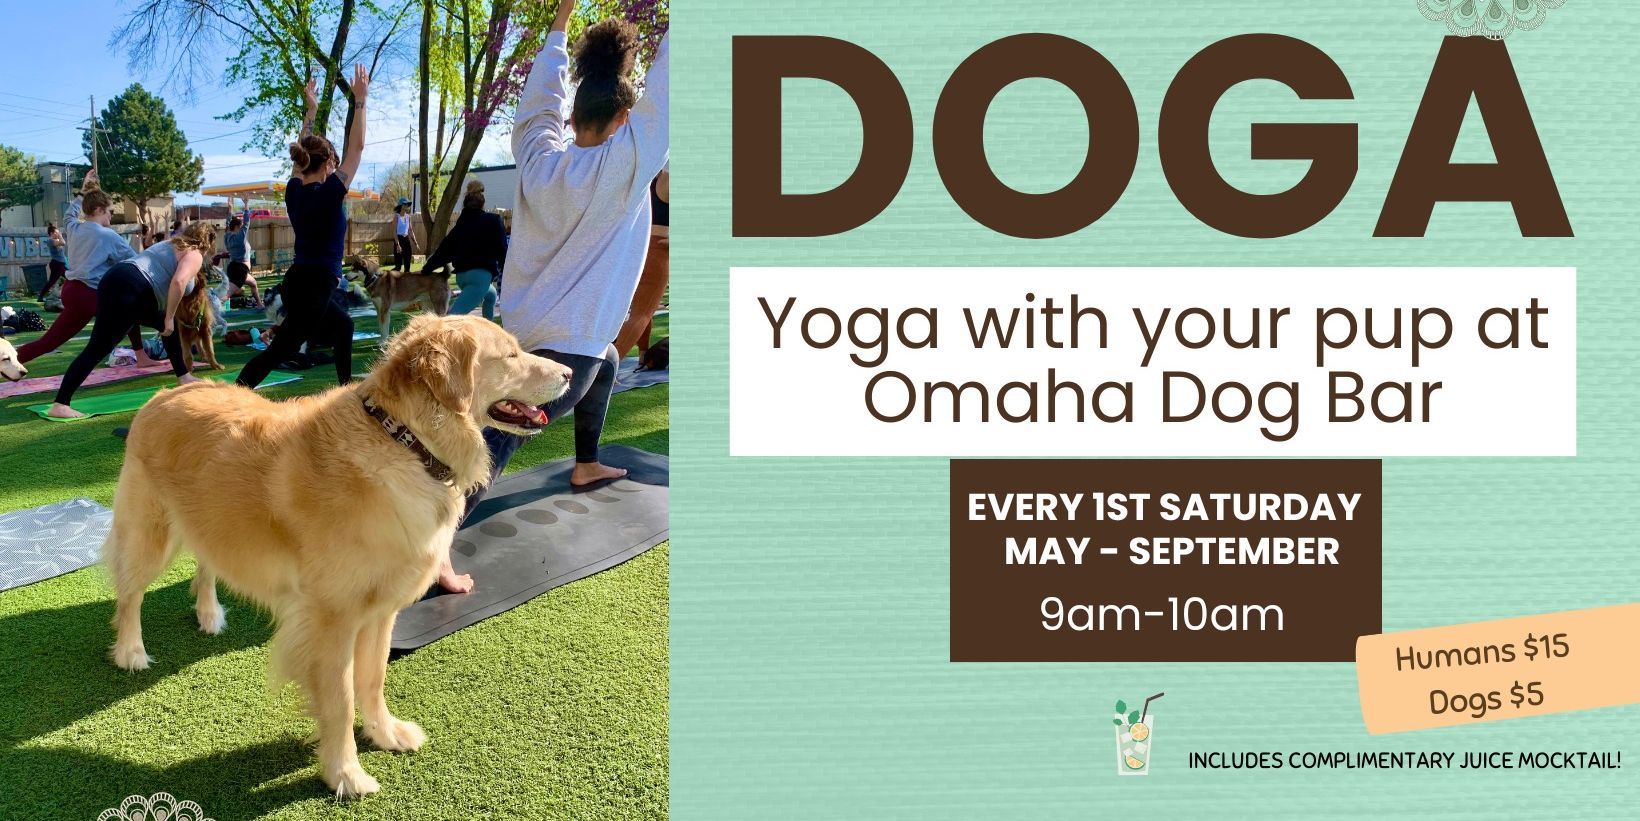 Doga at Omaha Dog Bar promotional image